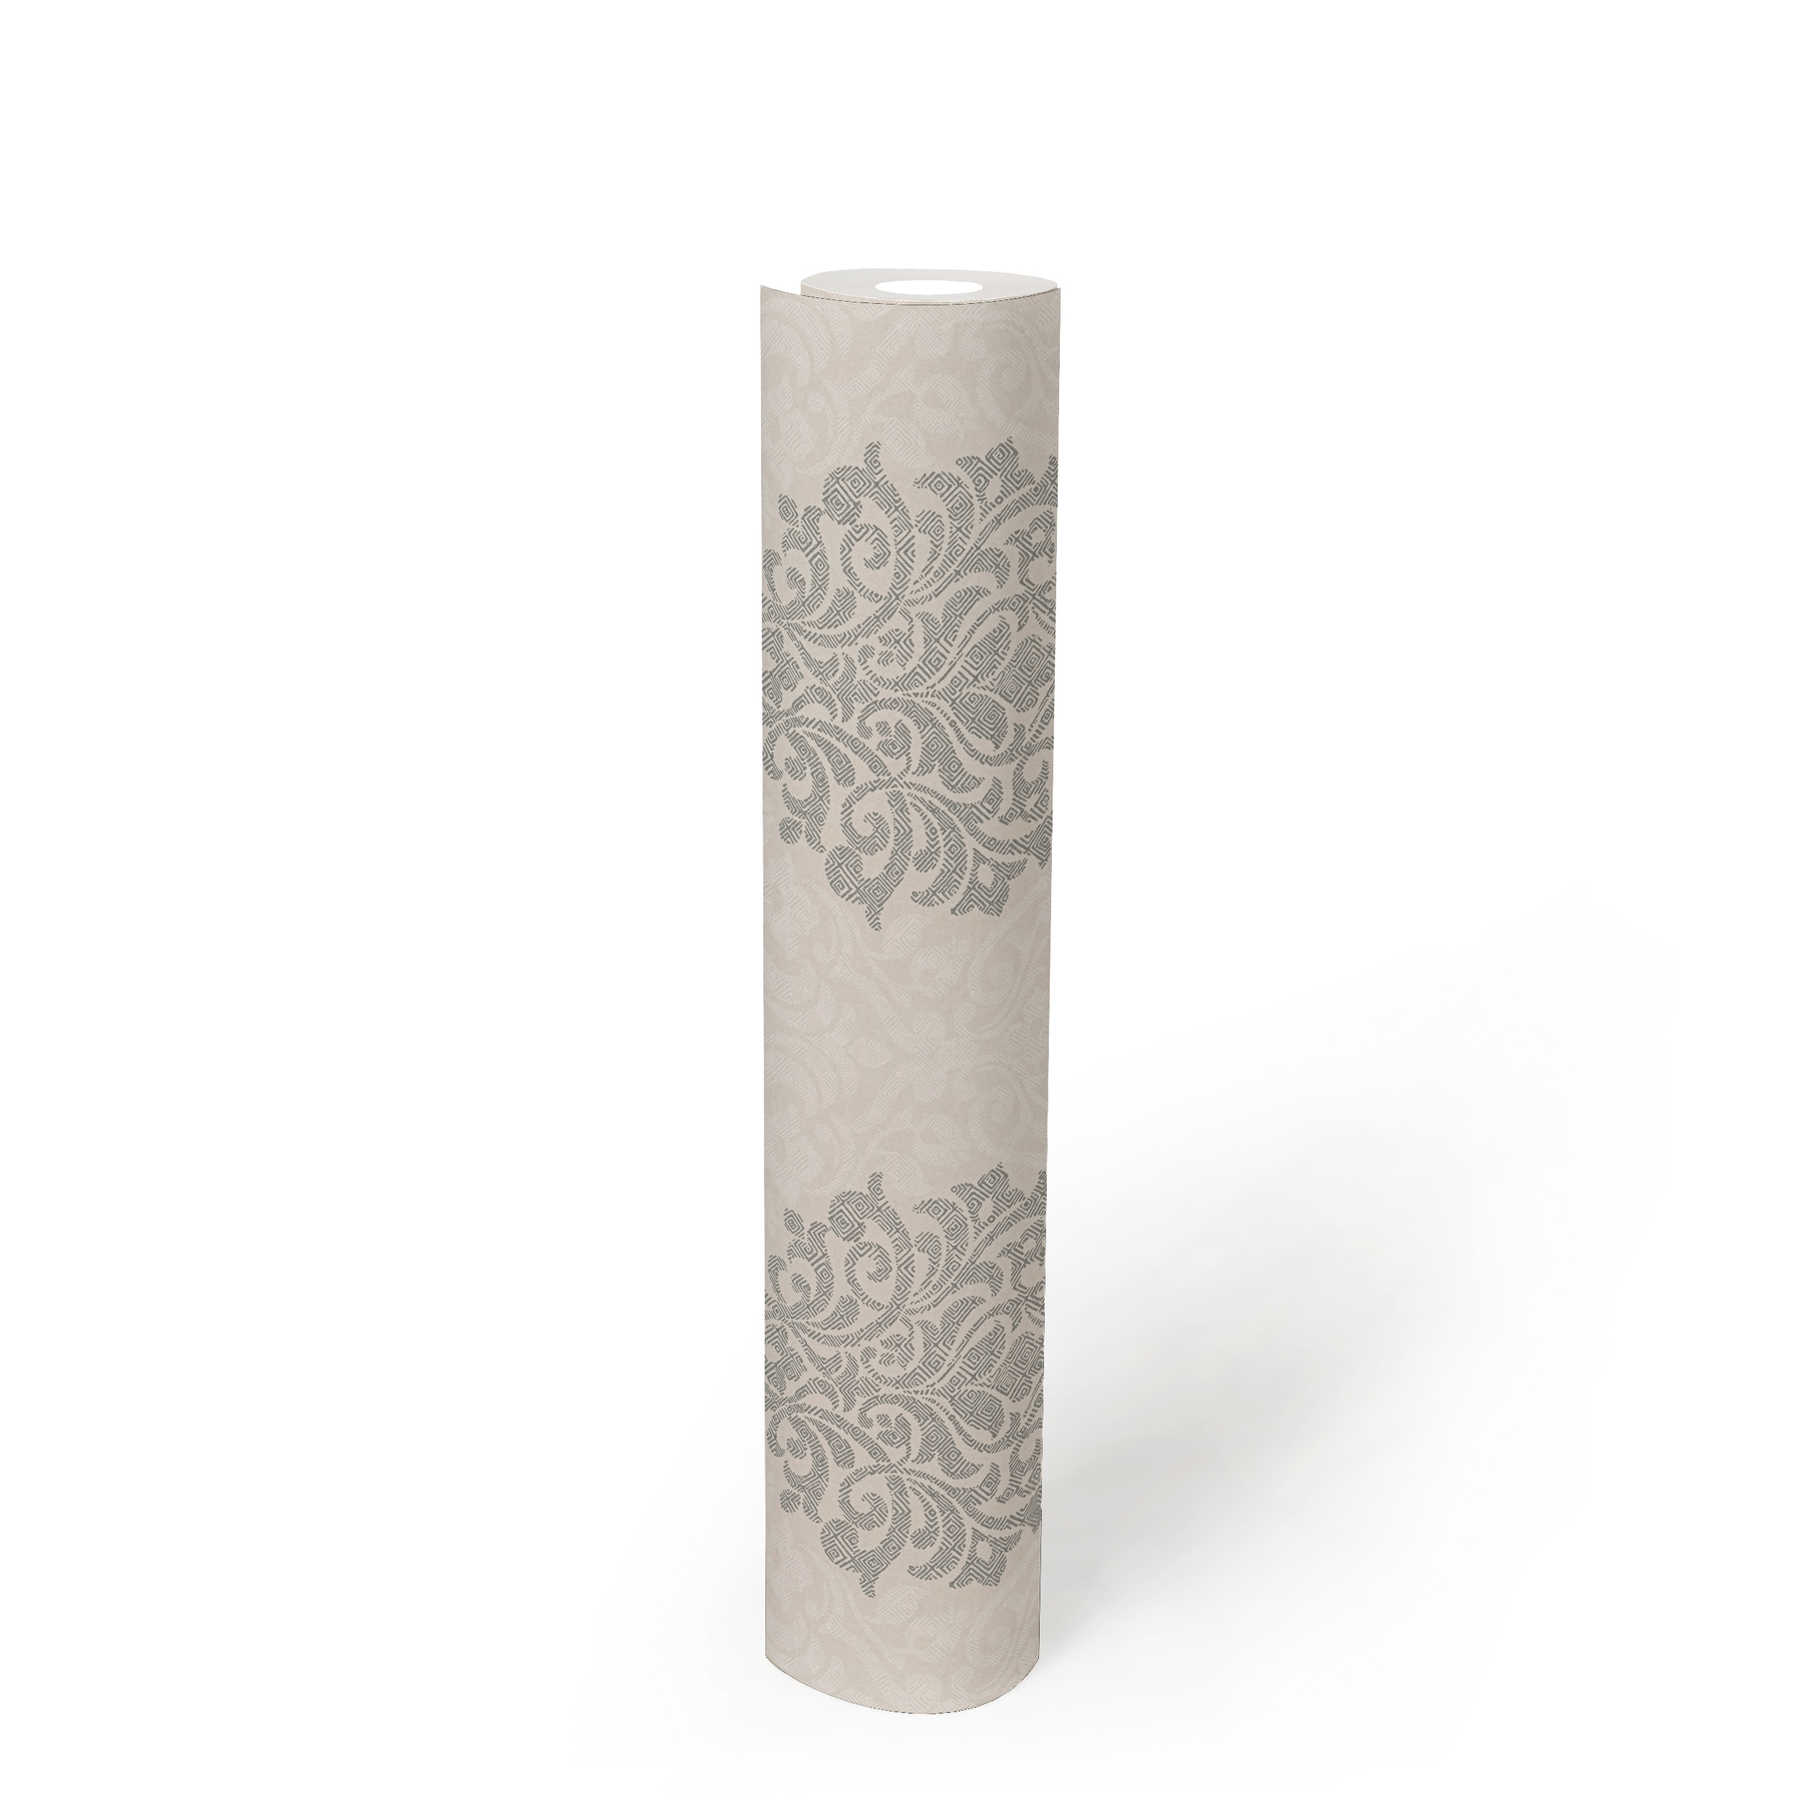             Floral ornamental wallpaper diamond pattern in ethnic style - beige, silver
        